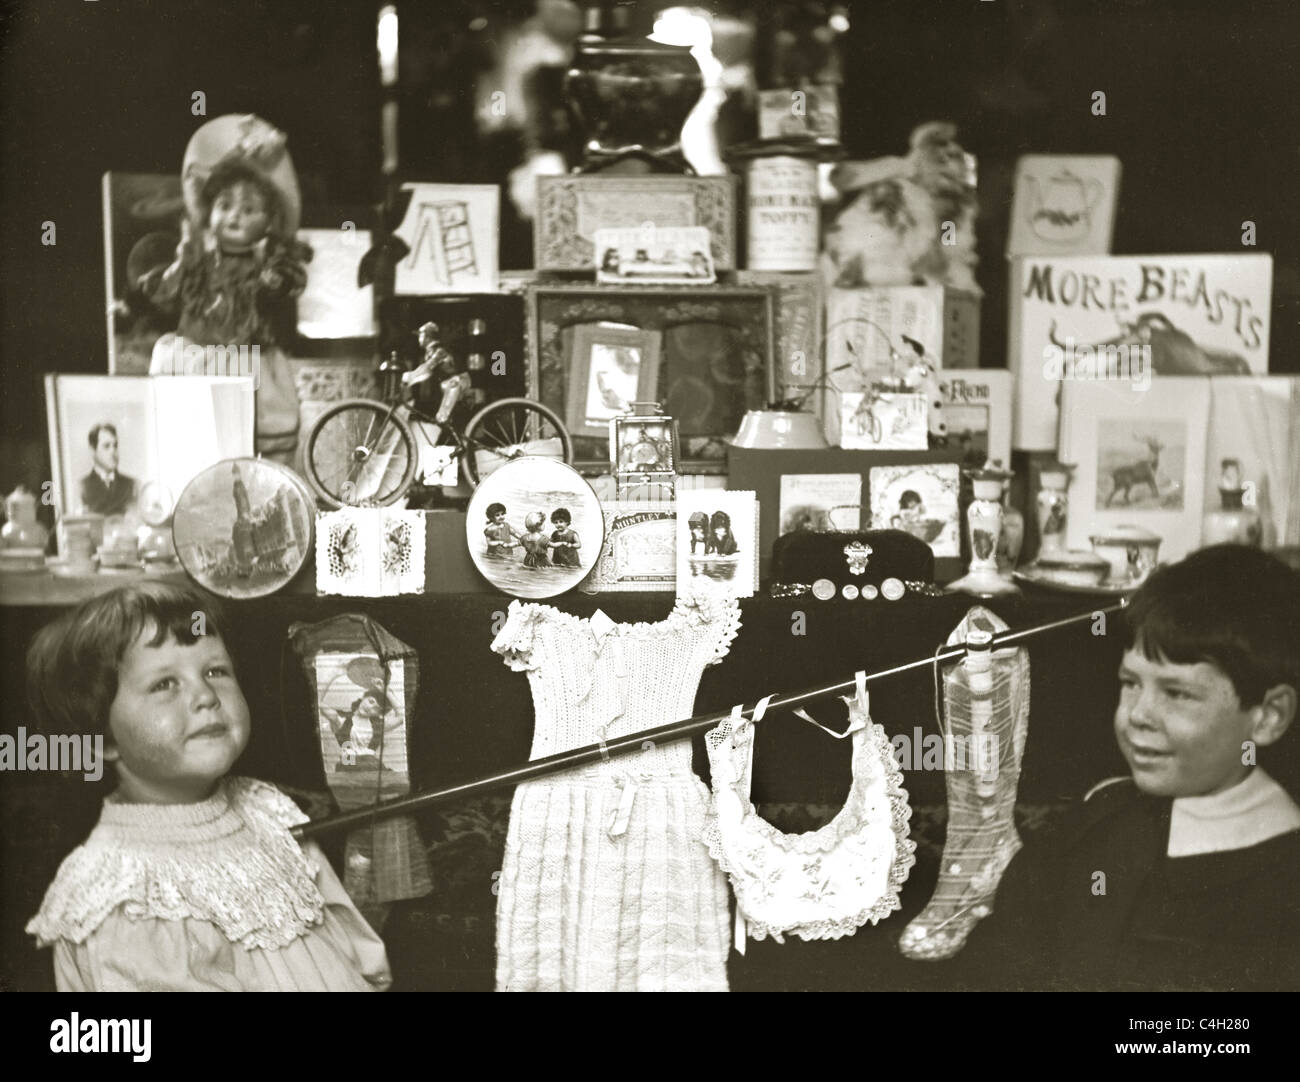 Originalfoto von edwardianischen oder viktorianischen Kindern, die durch das Schaufenster/die Ladenfront eines Spielwarenladens im Retro-Stil aus den 1890 Jahren 1890 schauten. Stockfoto